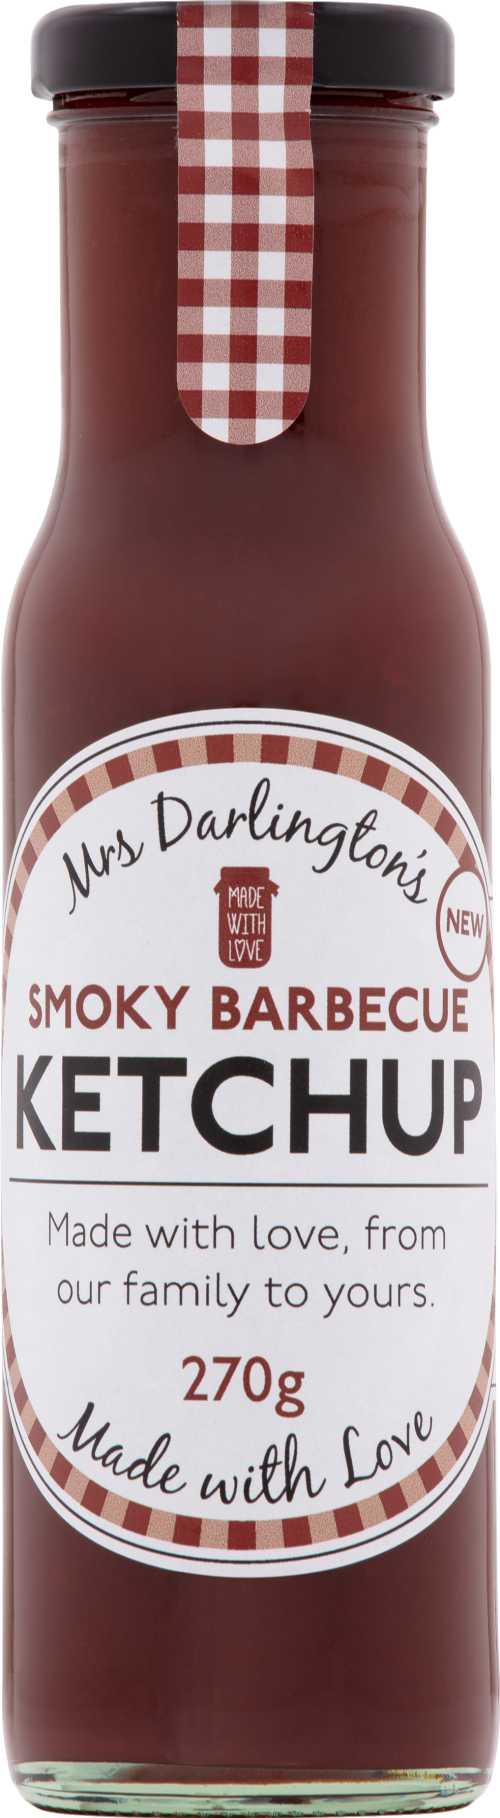 DARLINGTON'S Smoky Barbecue Ketchup 270g